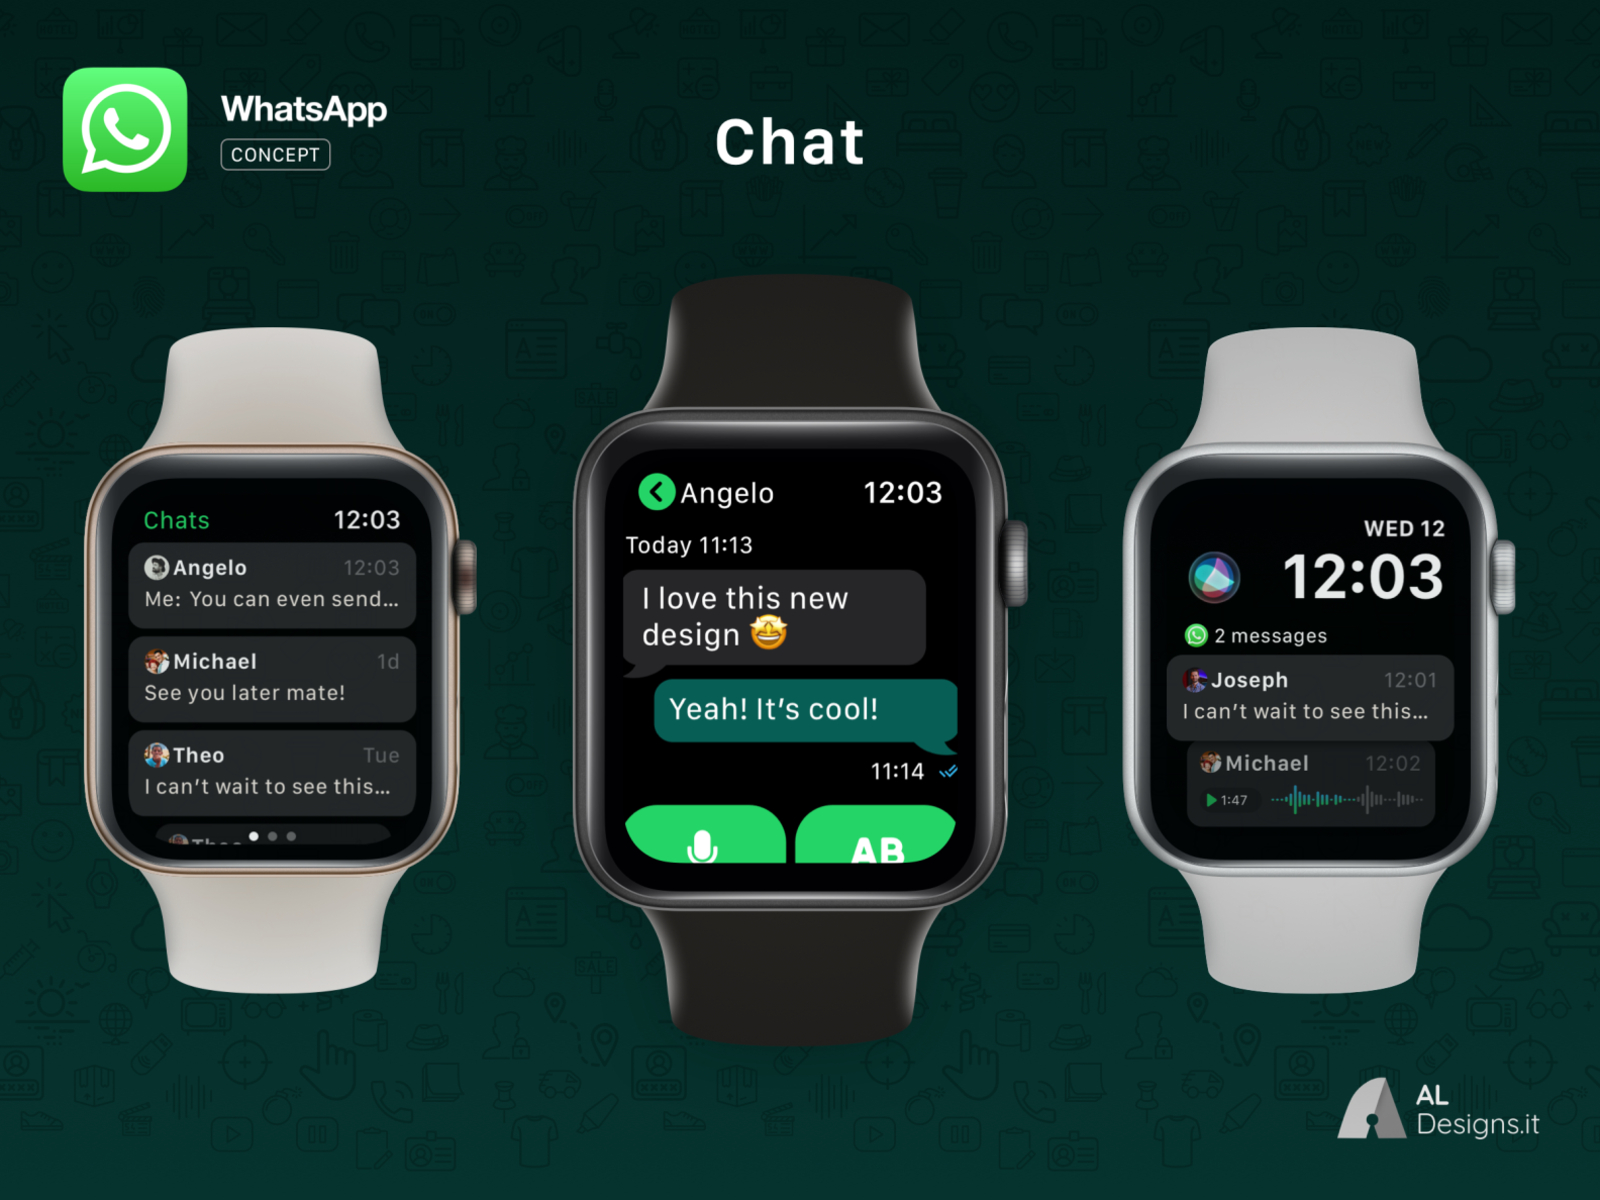 whatsapp app for apple watch